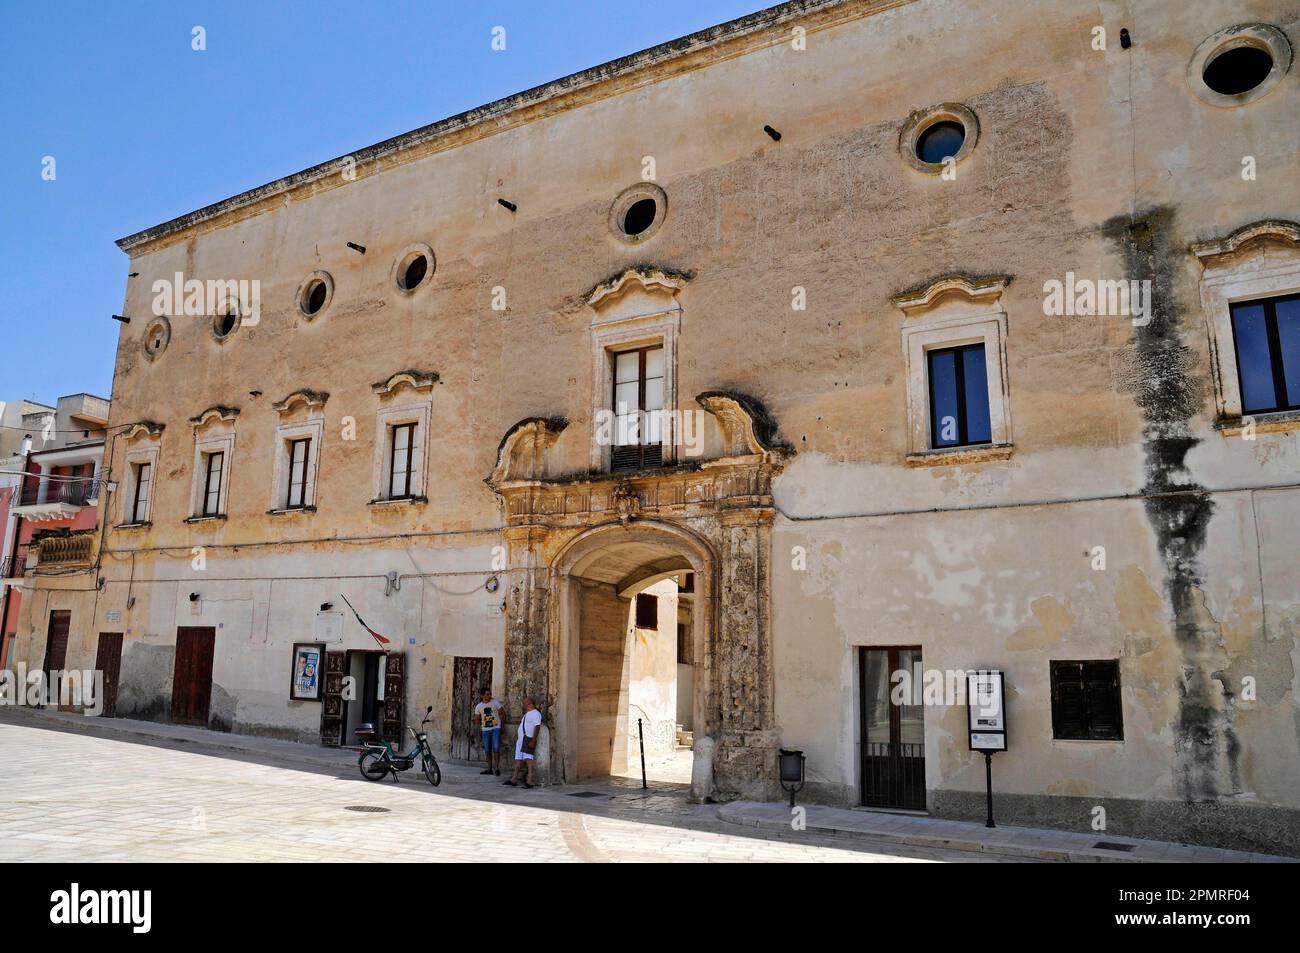 Palazzo Marchesale, Palace, Piazza 4 Novembre, Square, Montemesola, Taranto Province, Taranto, Puglia, Italy Stock Photo